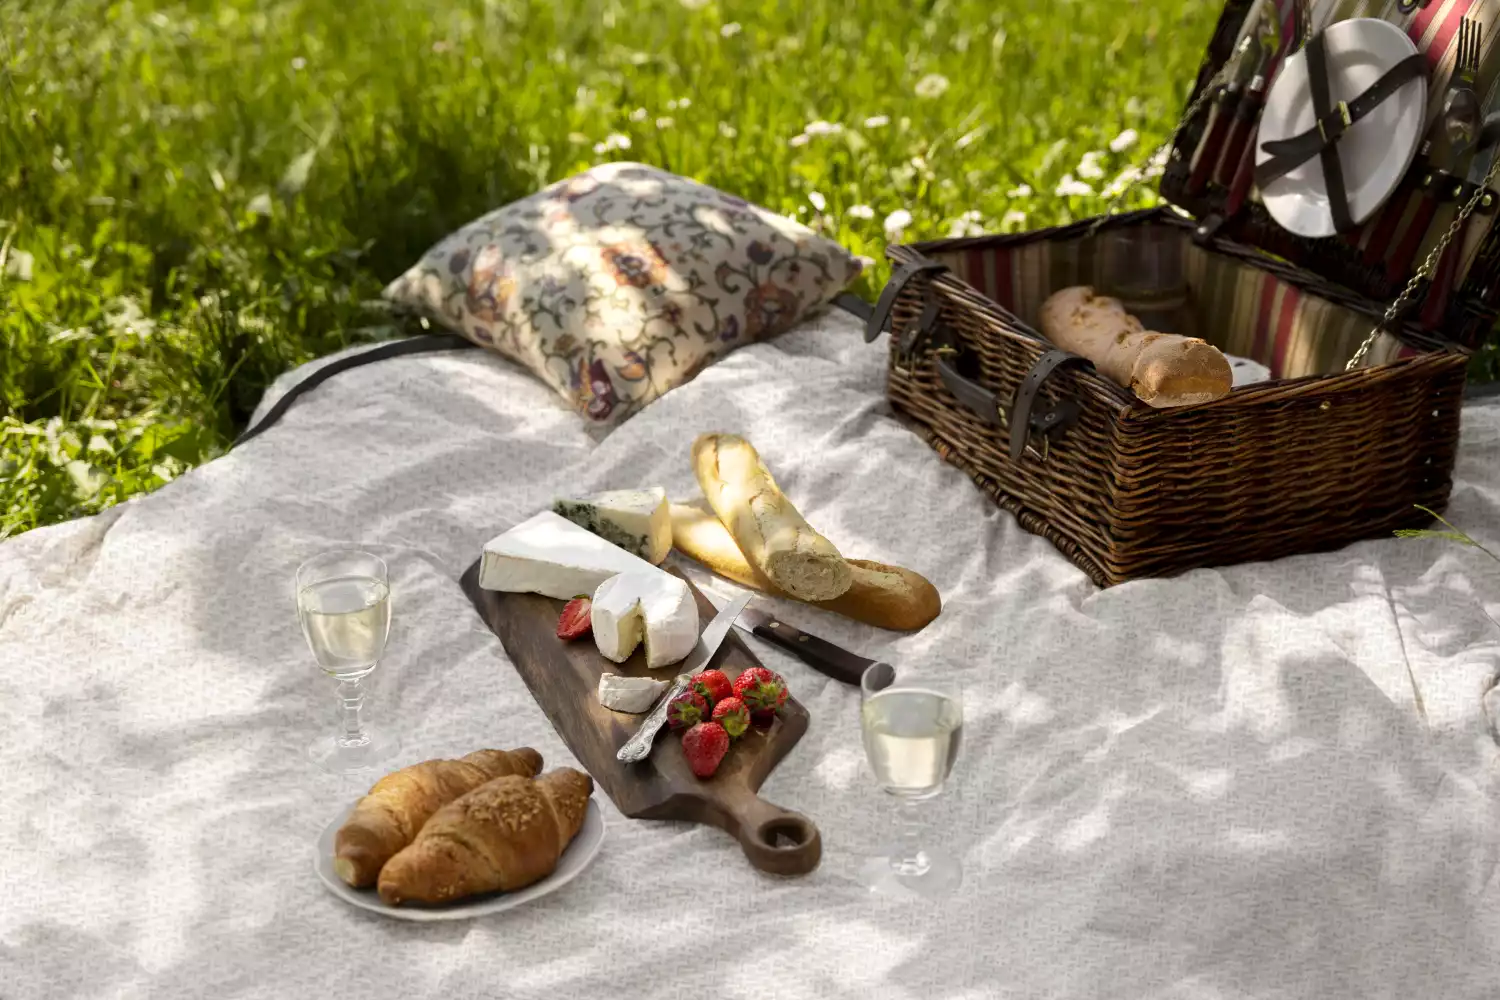 fancy picnic blanket